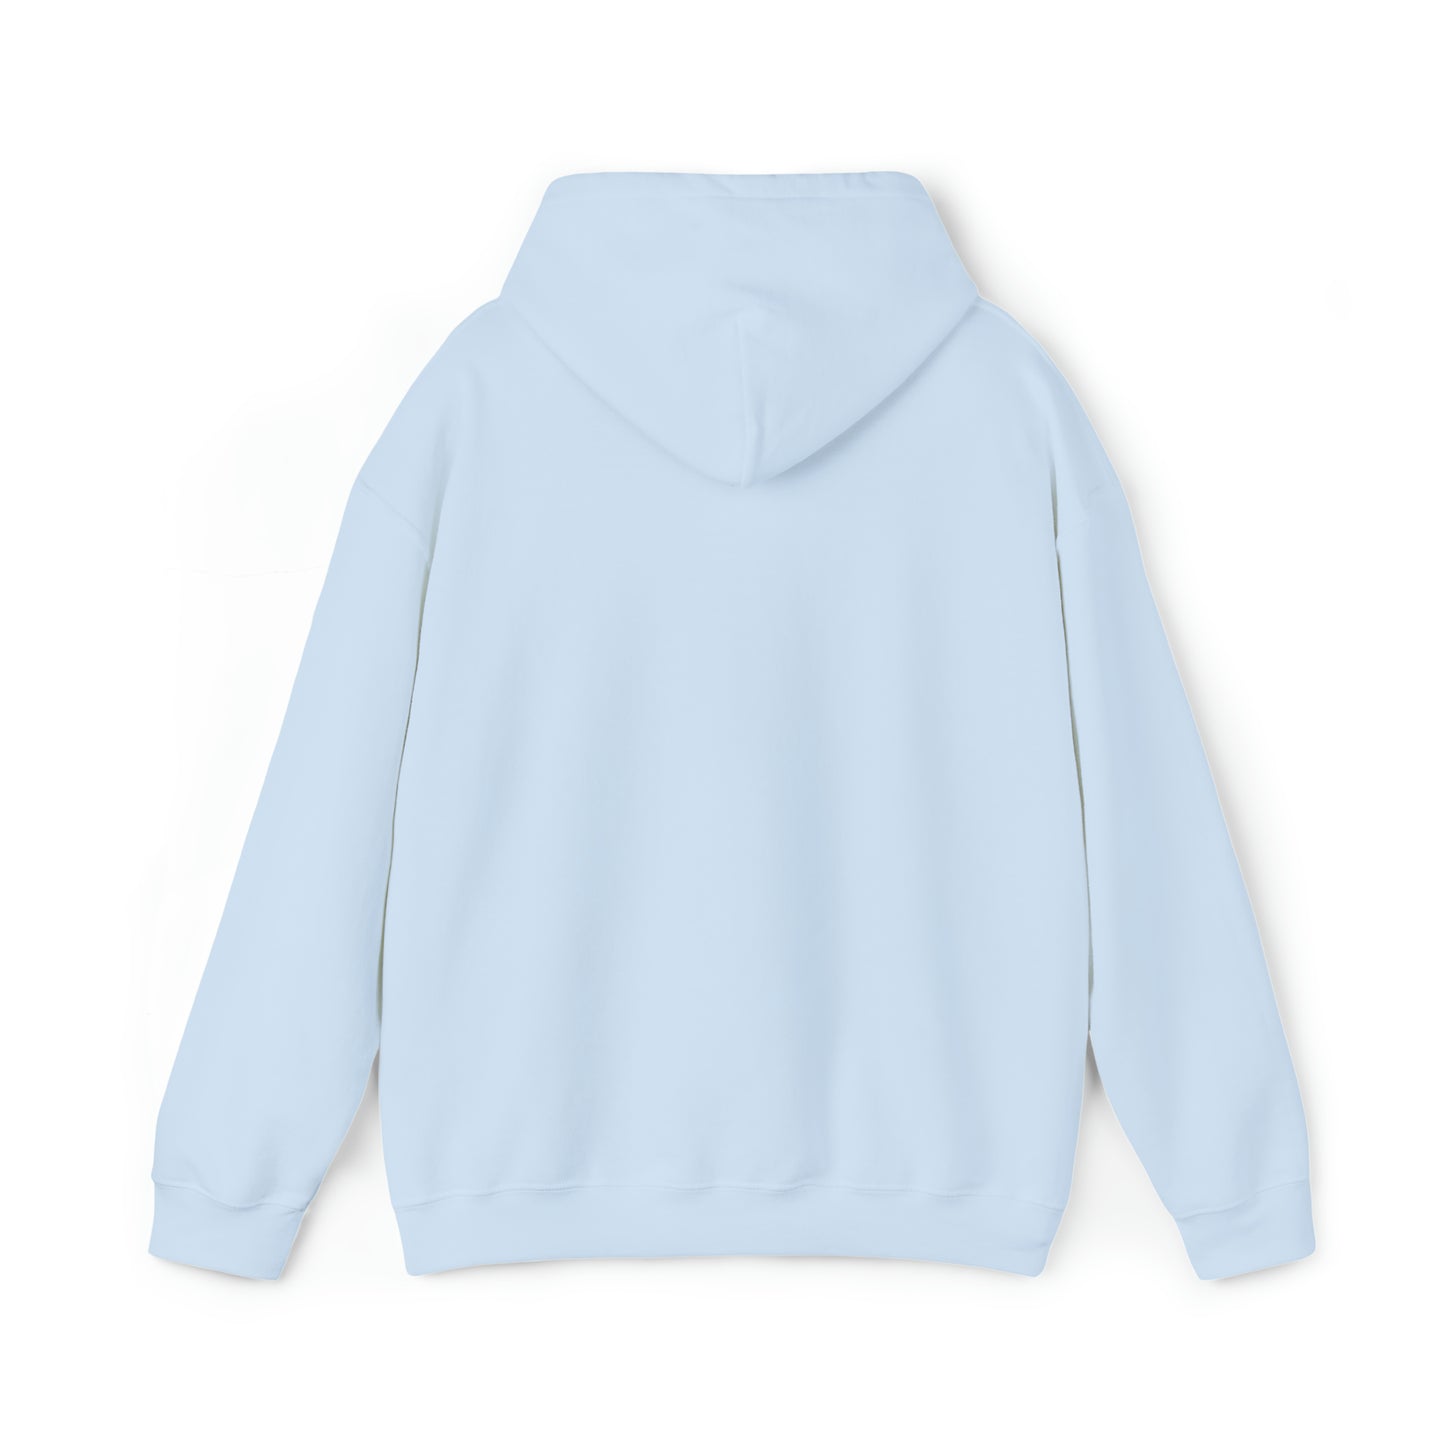 2 LOVED BY A KOOIKER Unisex Heavy Blend™ Hooded Sweatshirt